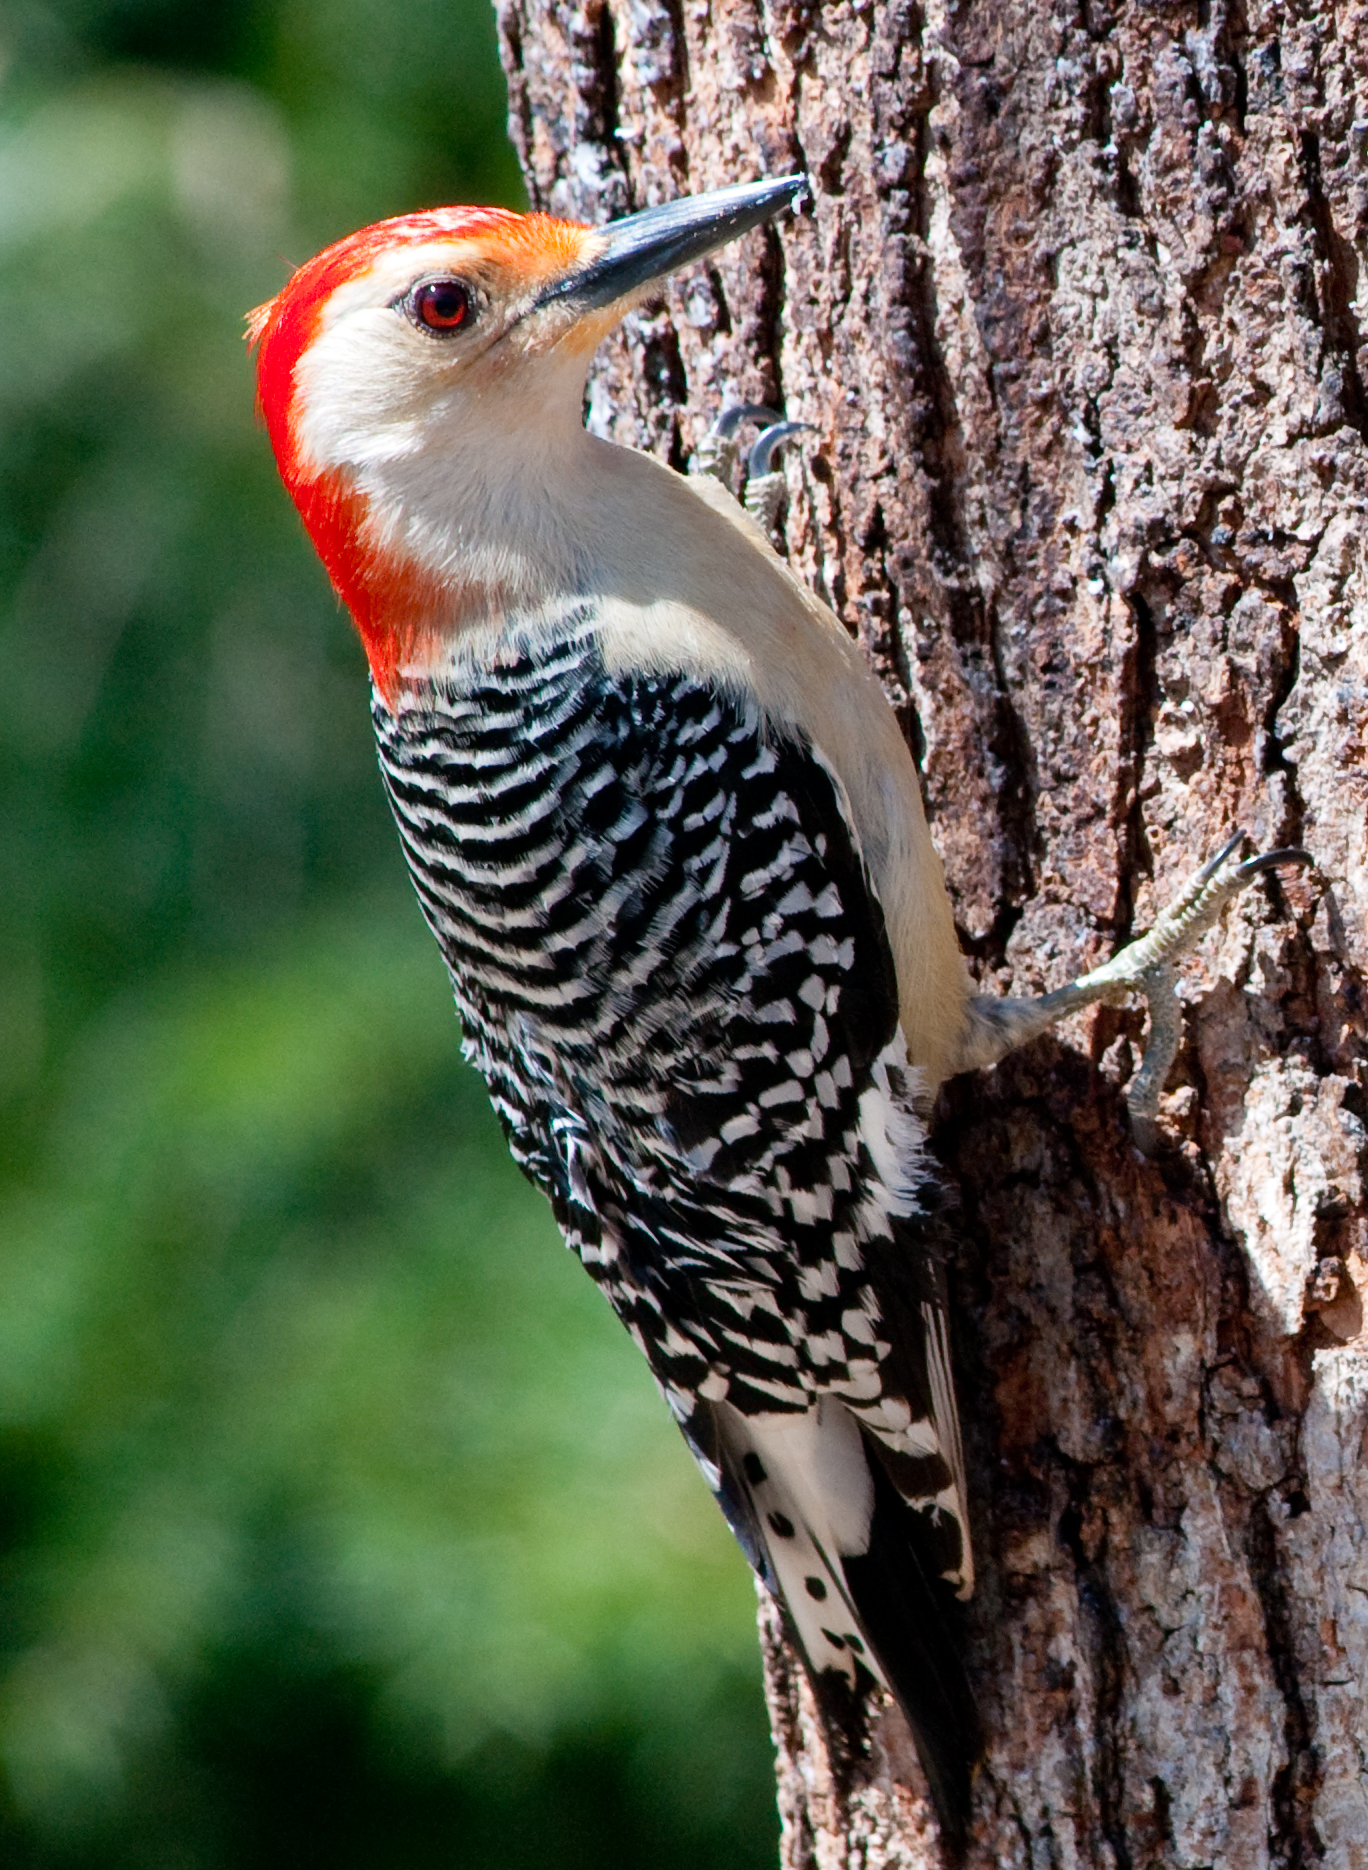 File:Red Bellied Woodpecker by Bonnie Gruenberg.jpg - Wikimedia Commons